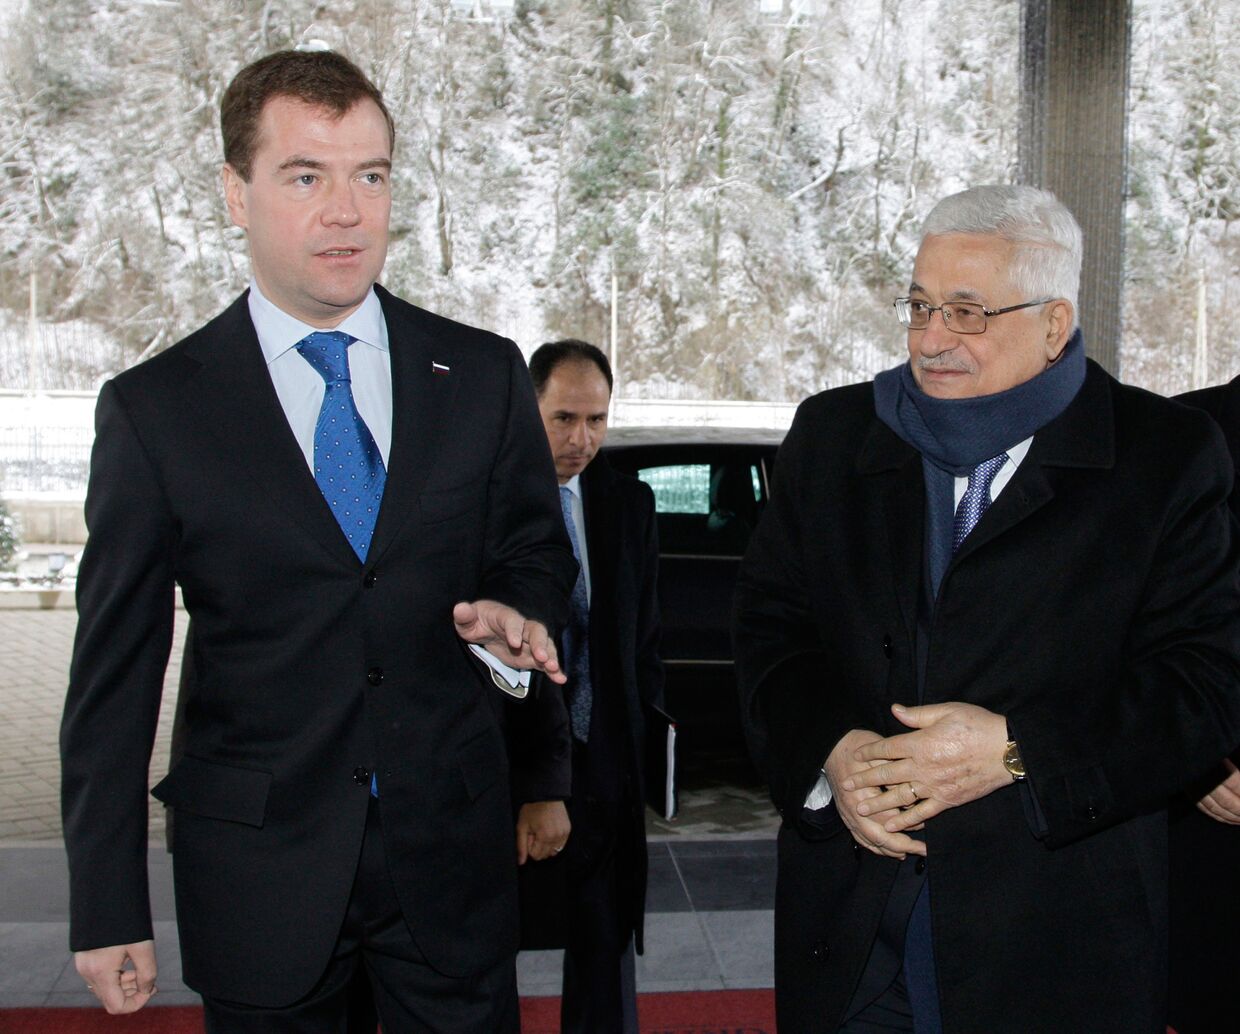 Встреча Дмитрия Медведева и Махмуда Аббаса в Сочи